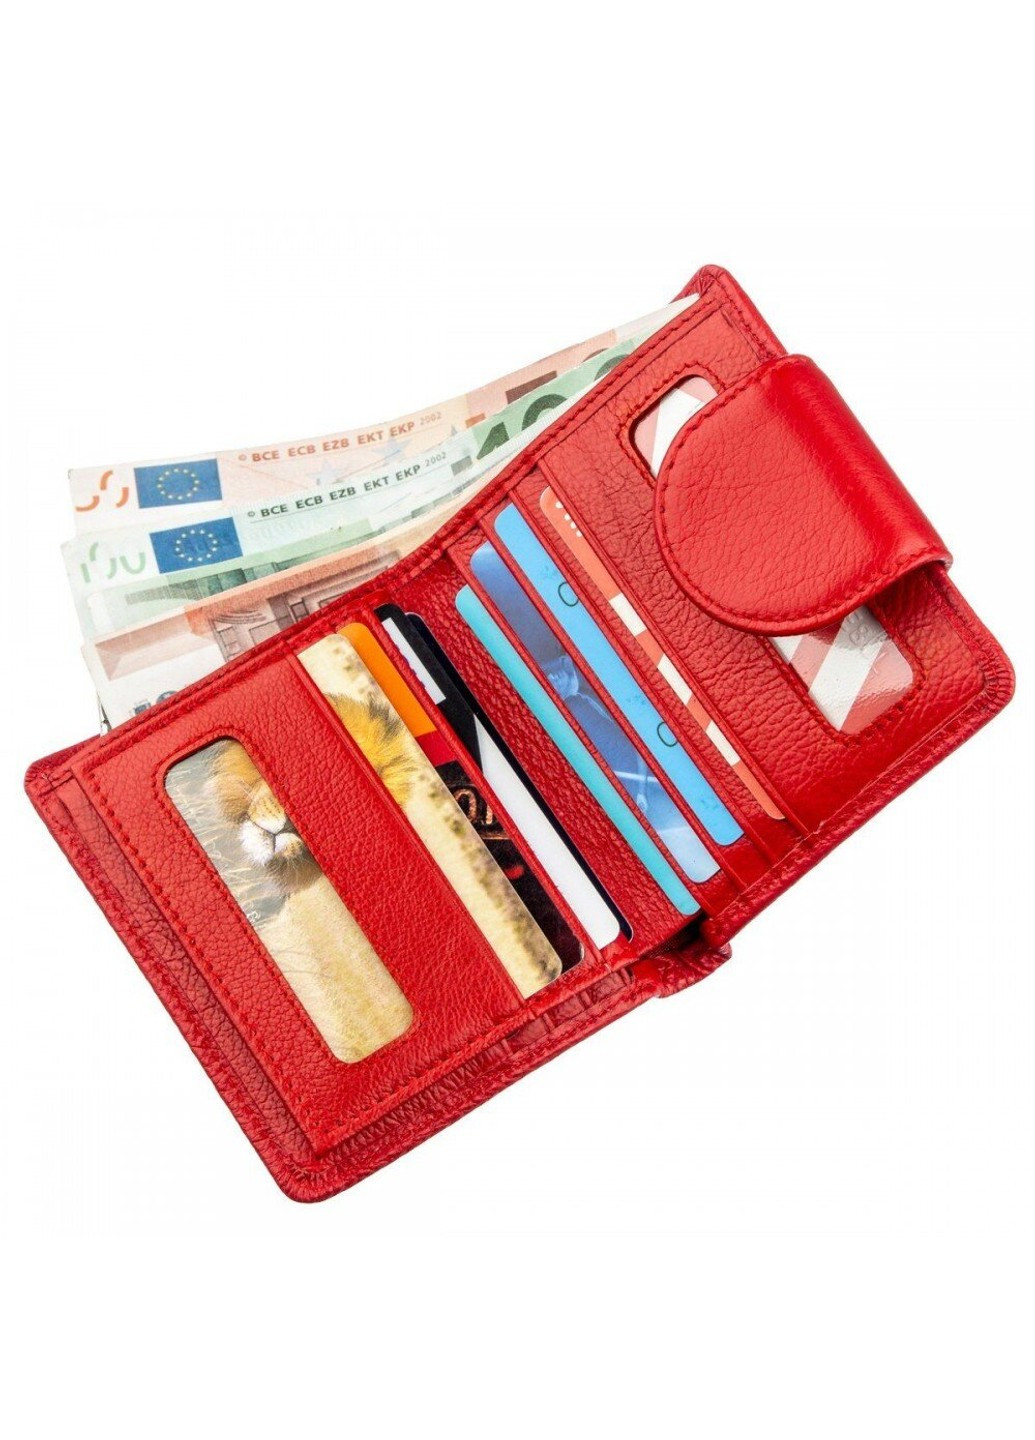 Женский красный кошелёк из натуральной кожи ST Leather 18923 Красный ST Leather Accessories (262453724)